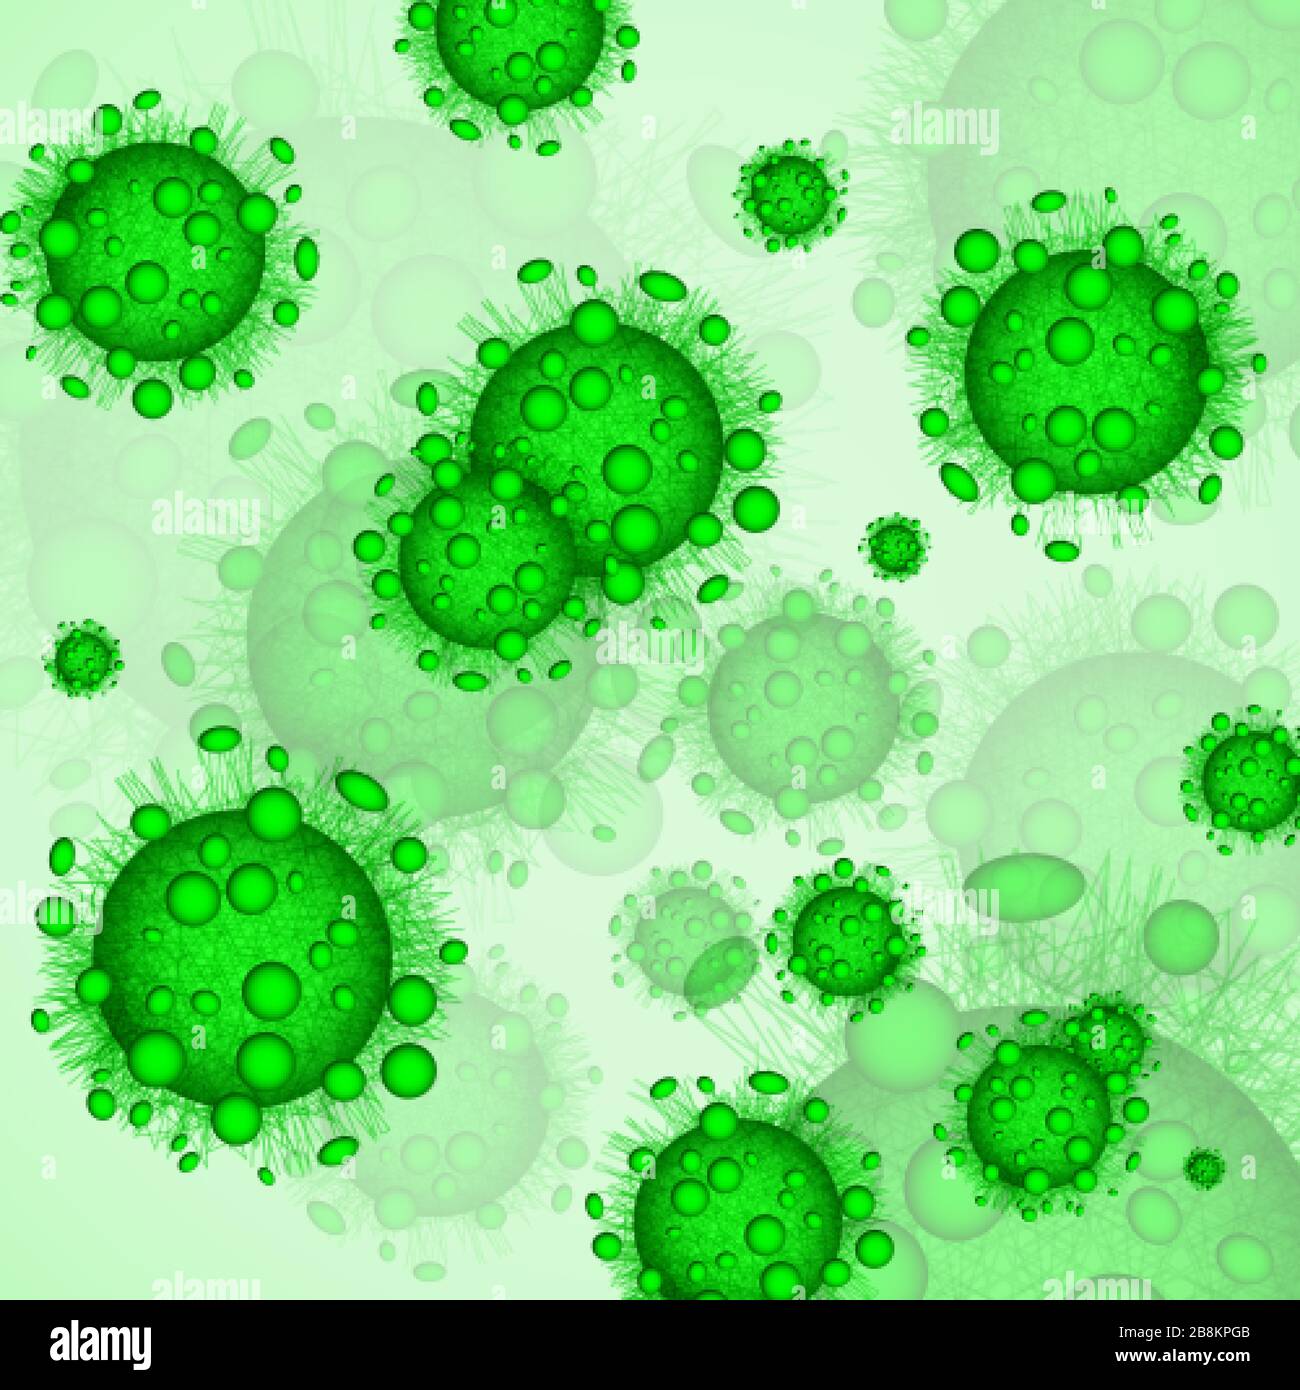 Grüne Viruszellen. Gefährliche Infektion oder Krankheit. Hintergrund der medizinischen Warnung. Vektorgrafiken Stock Vektor